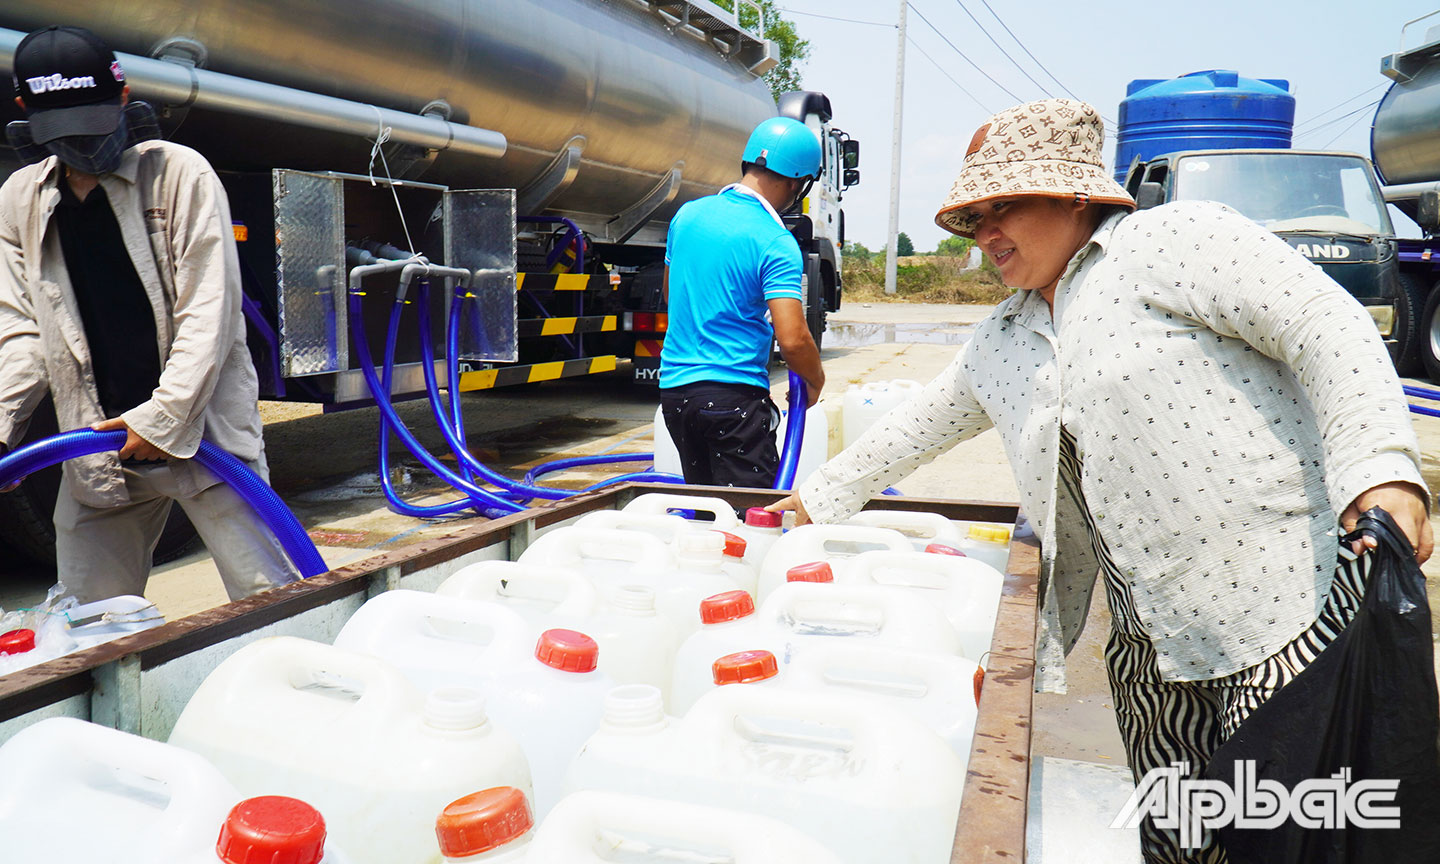 Khi hay tin xe chở nước từ thiện đến xã Gia Thuận, chị Nguyễn Thị Phương Hường, công nhân một xưởng may gia công trên địa bàn xã đã mang can nhựa đến lấy nước về cho gia đình và 6 chị em trong khu trọ sử dụng.